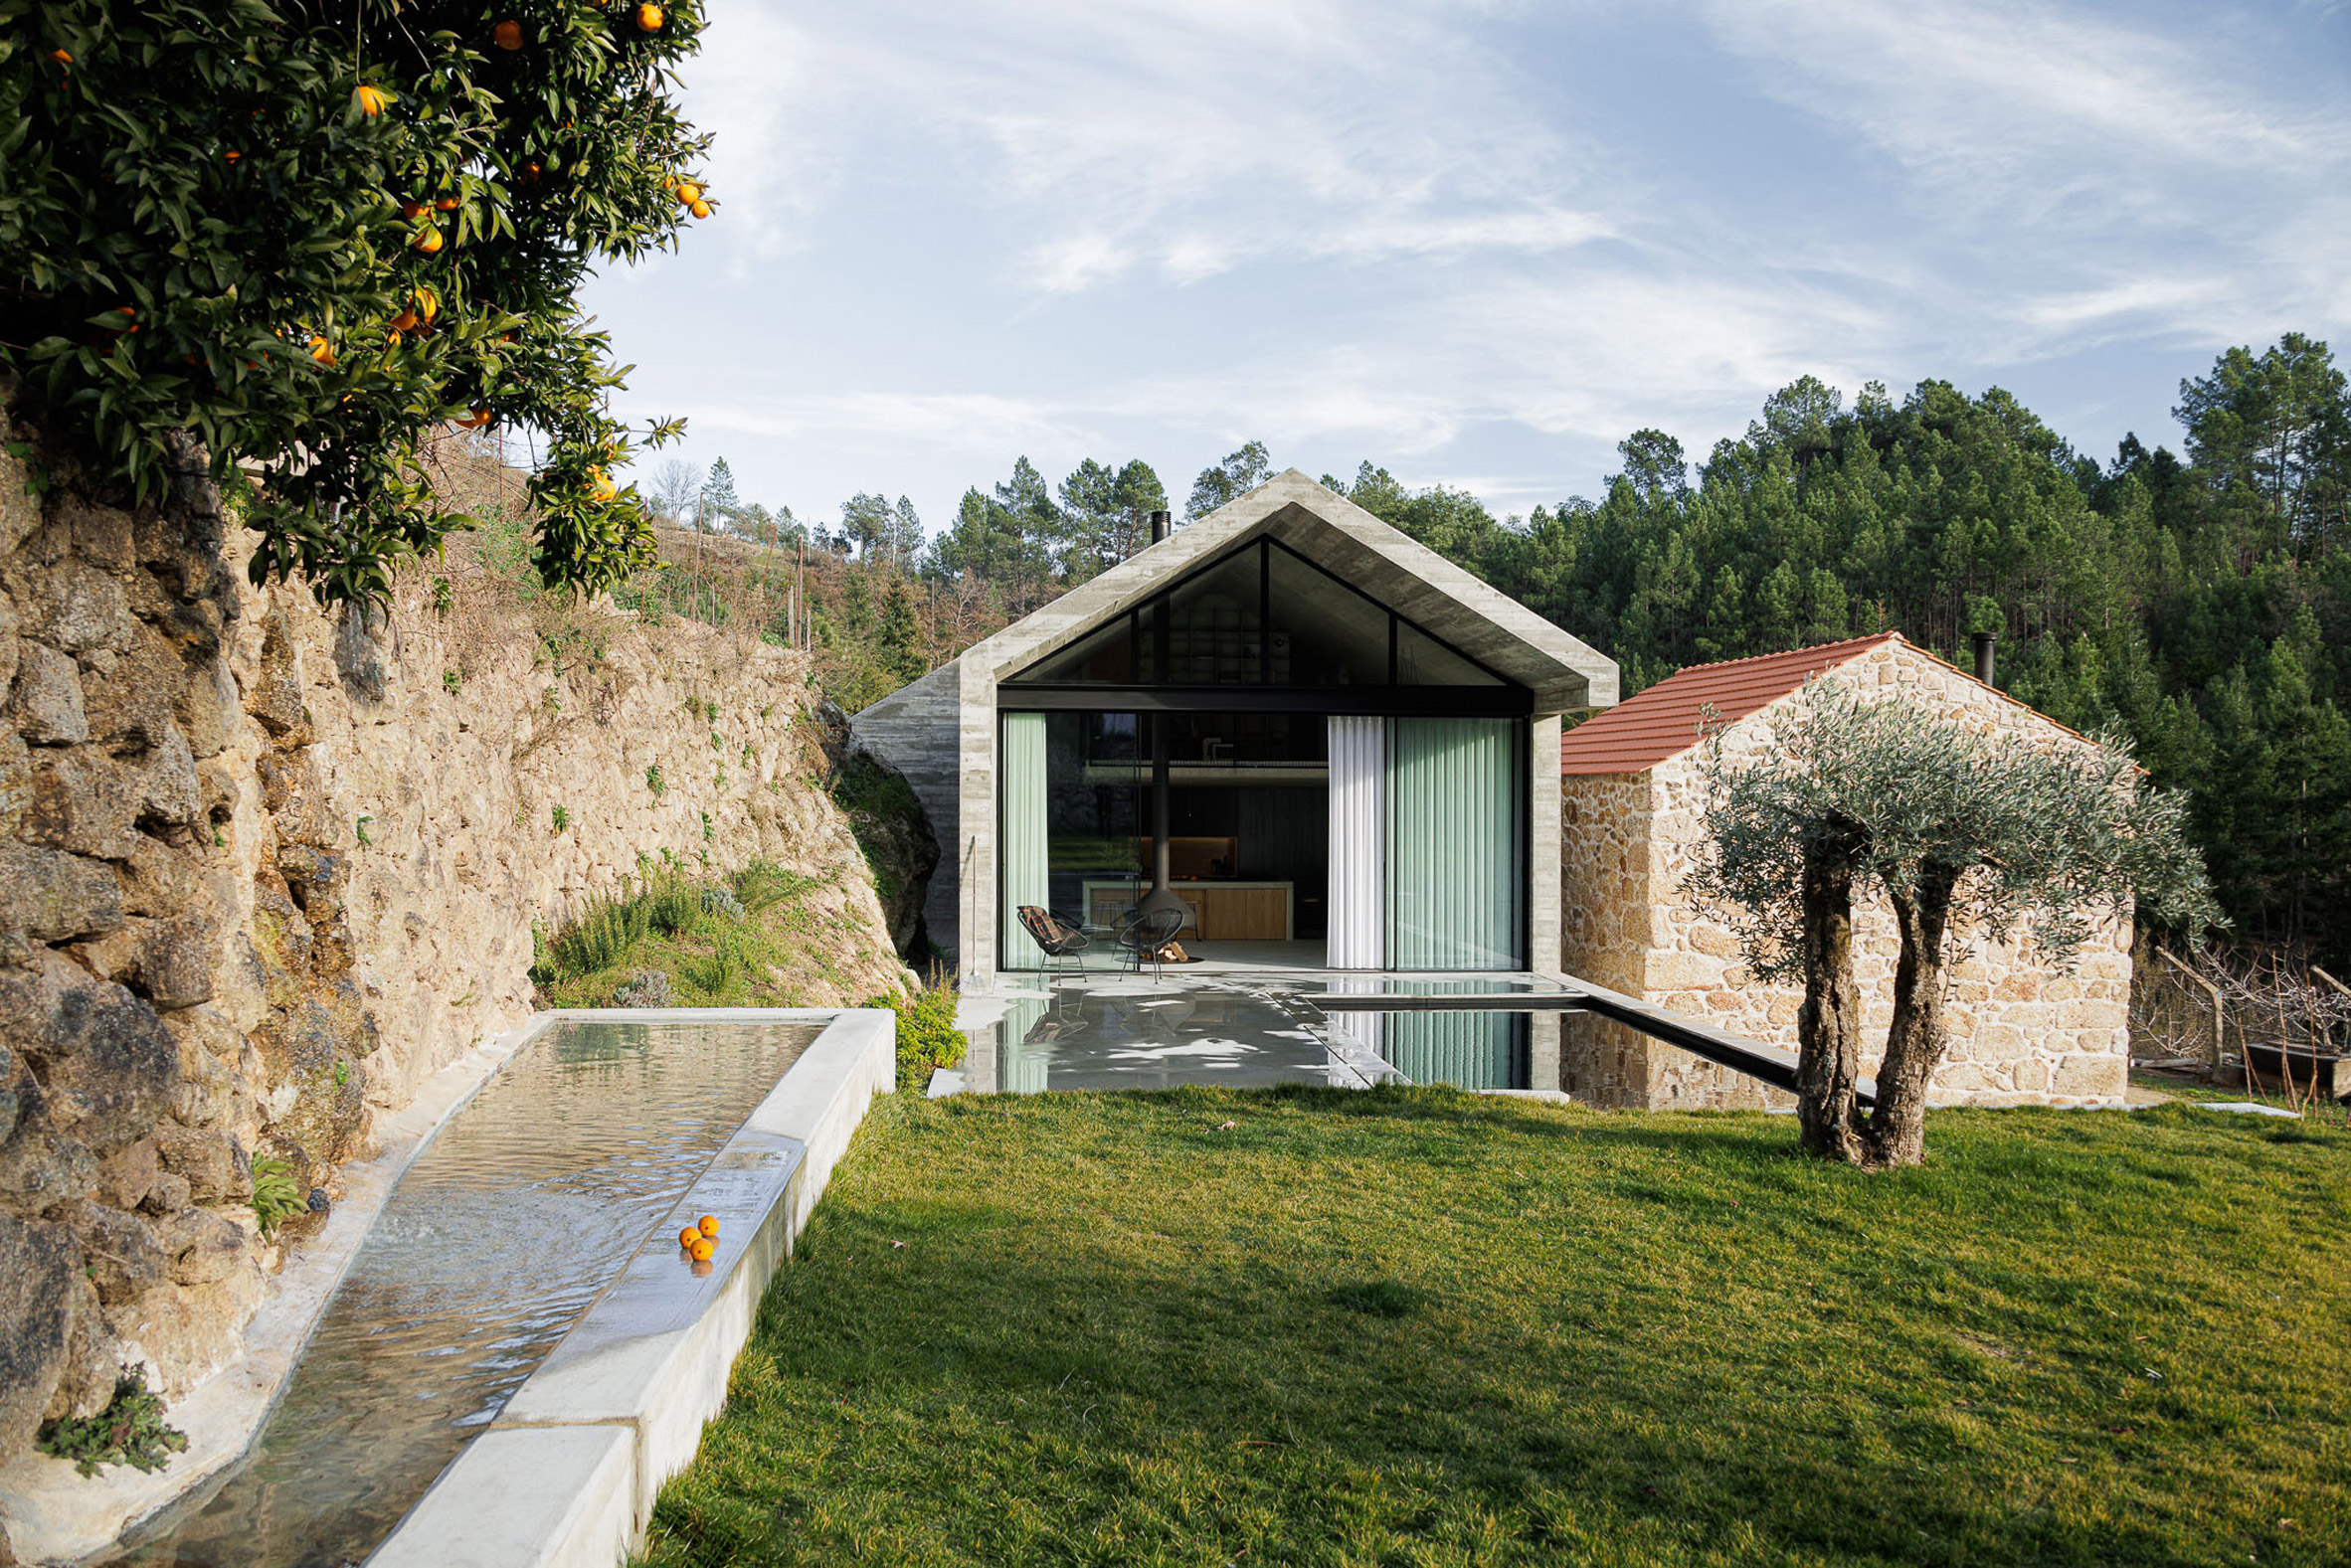 Portuguese farmhouse extension by Filipe Pina and David Bilo